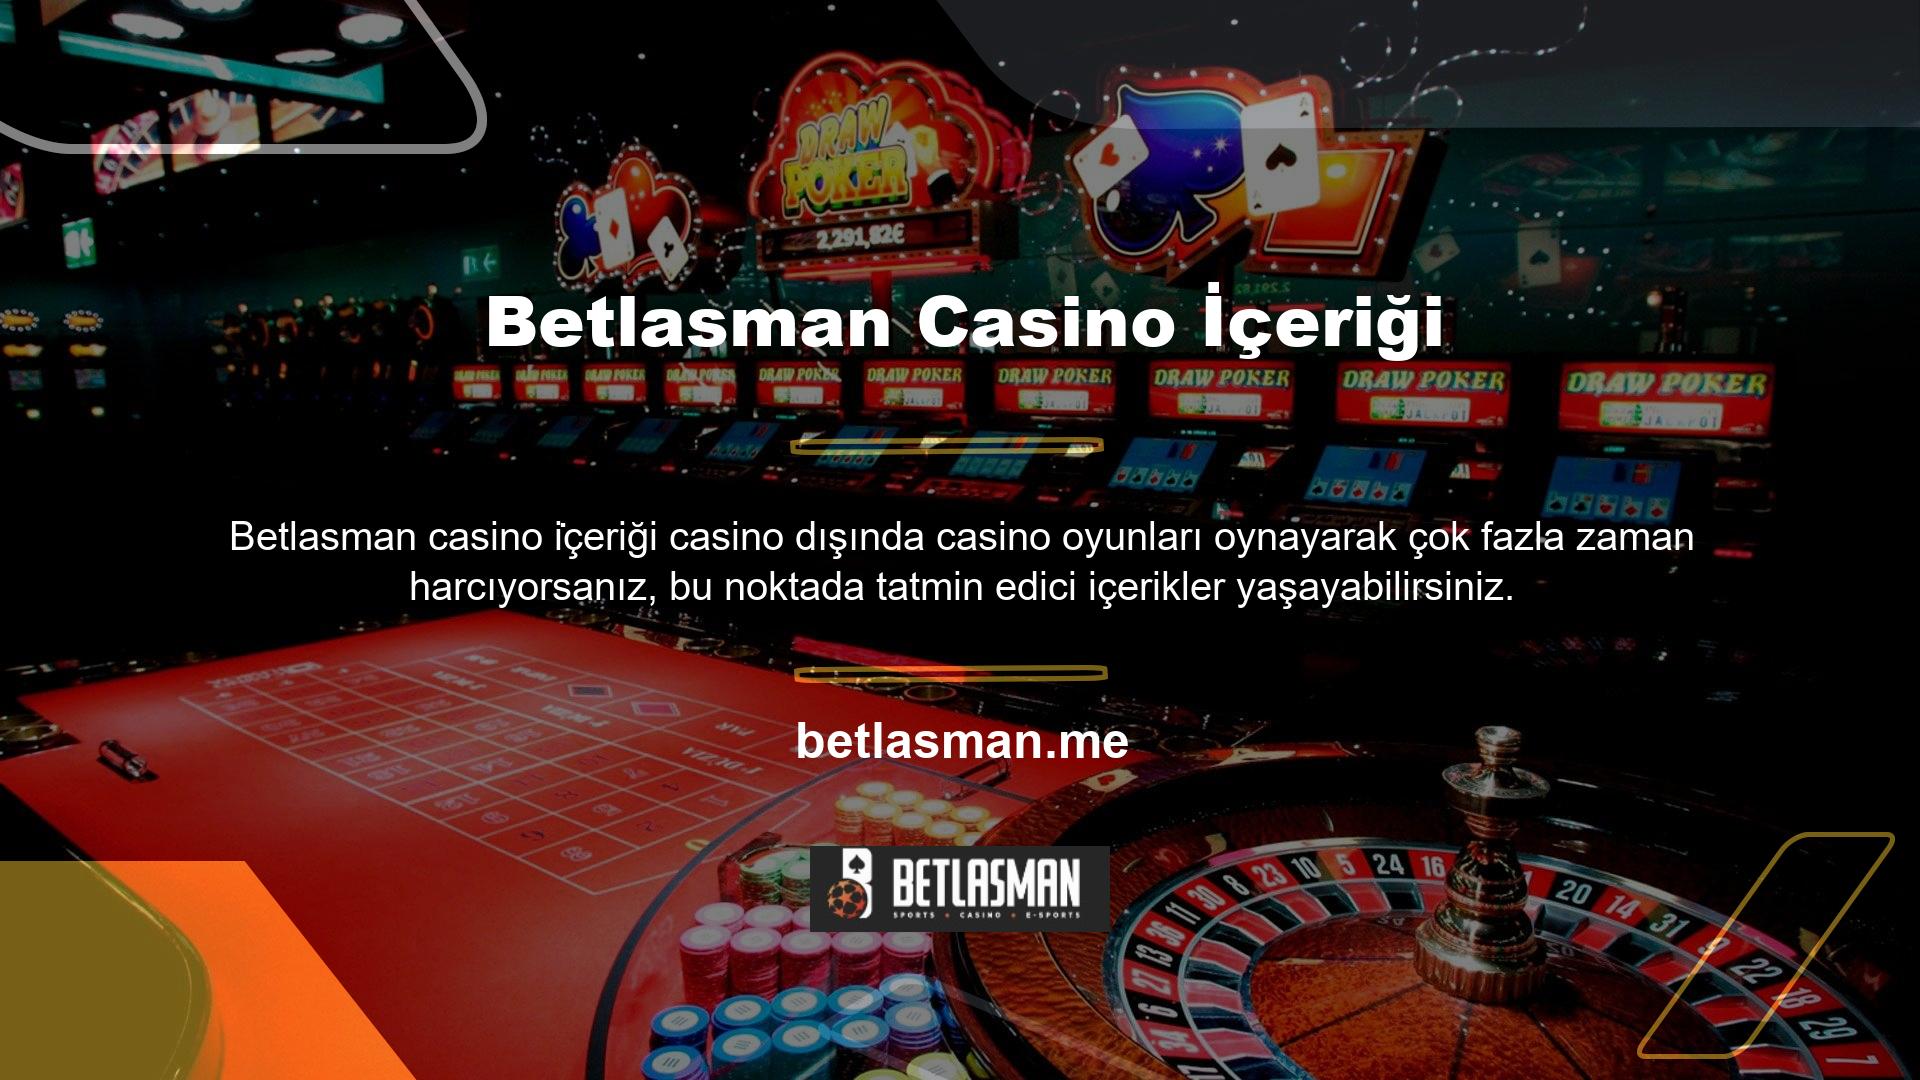 Örneğin siteye girdiğinizde karşınıza çıkan ilk karşılama kategorisi canlı casino menüsüdür